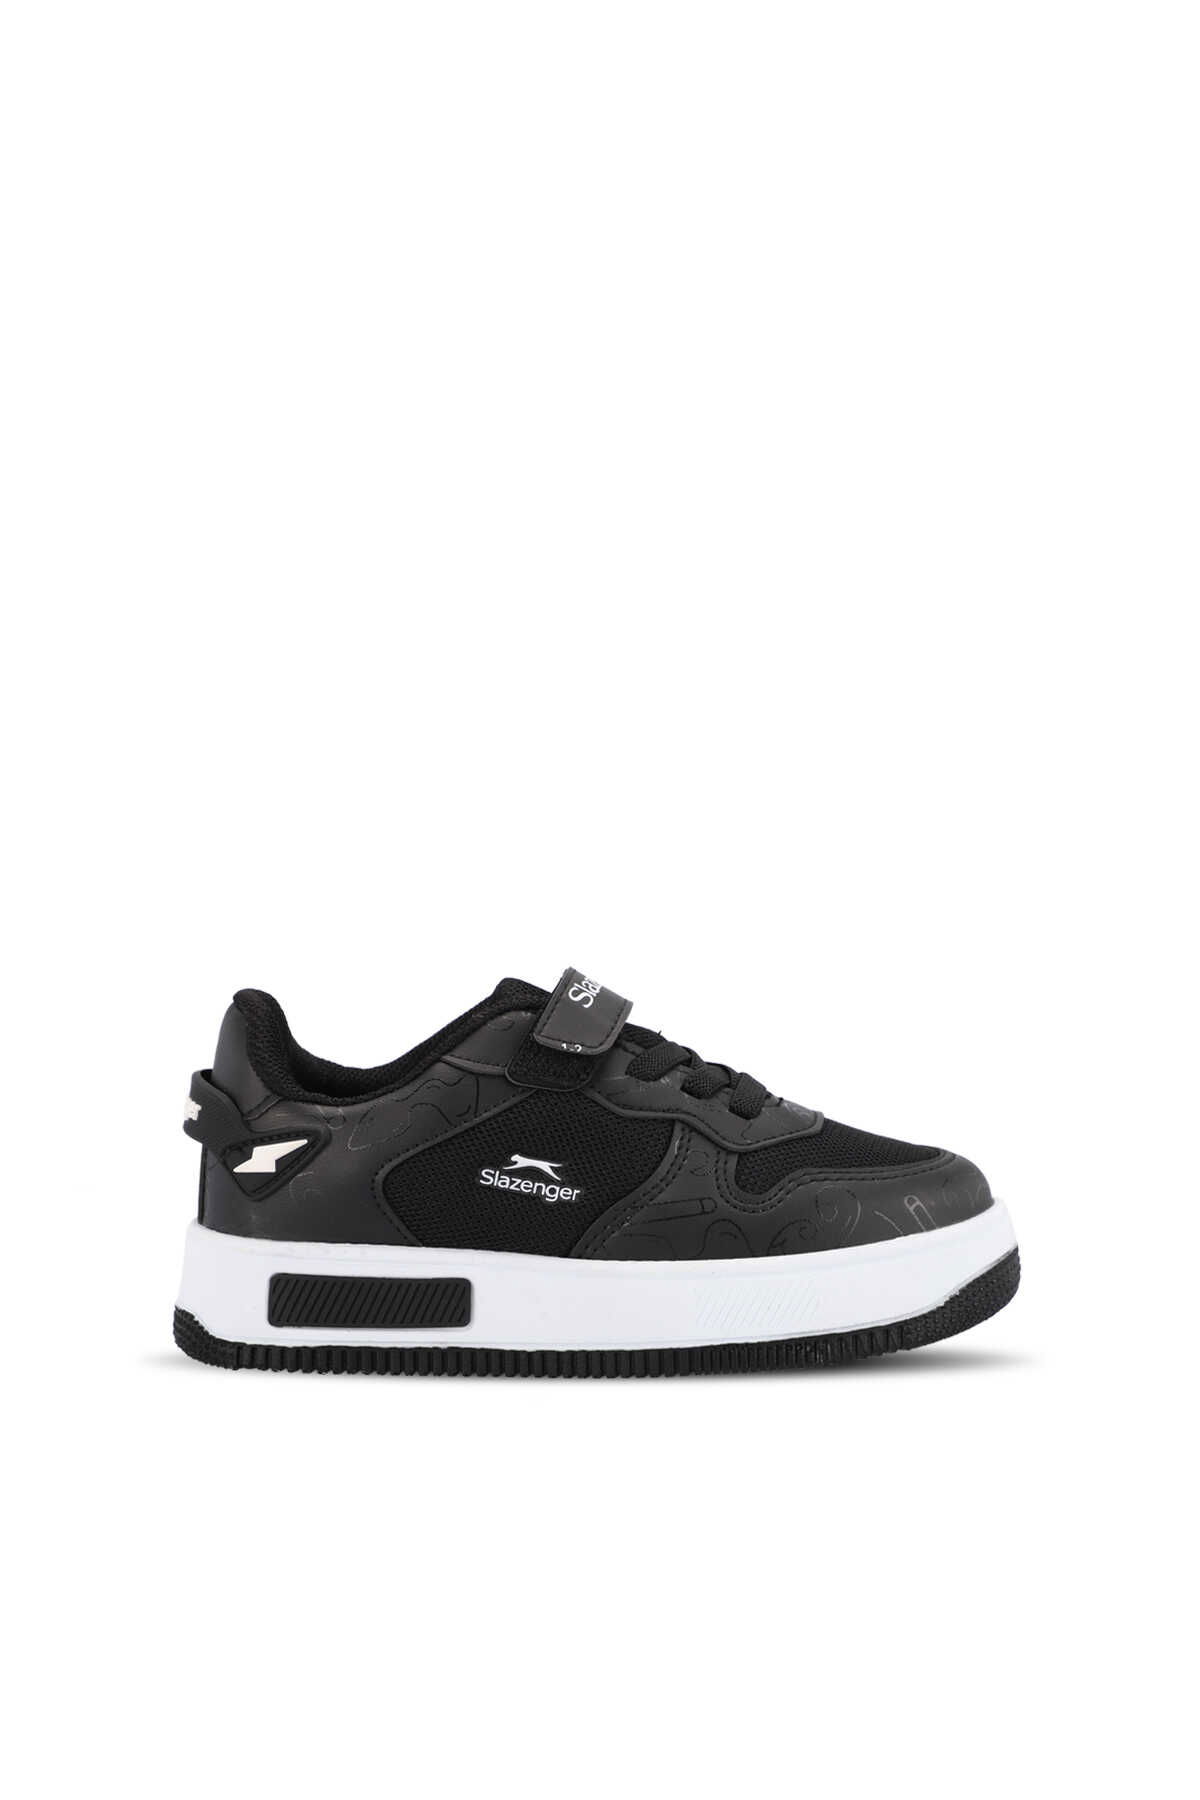 Slazenger - Slazenger PREAT Unisex Çocuk Sneaker Ayakkabı Siyah / Beyaz